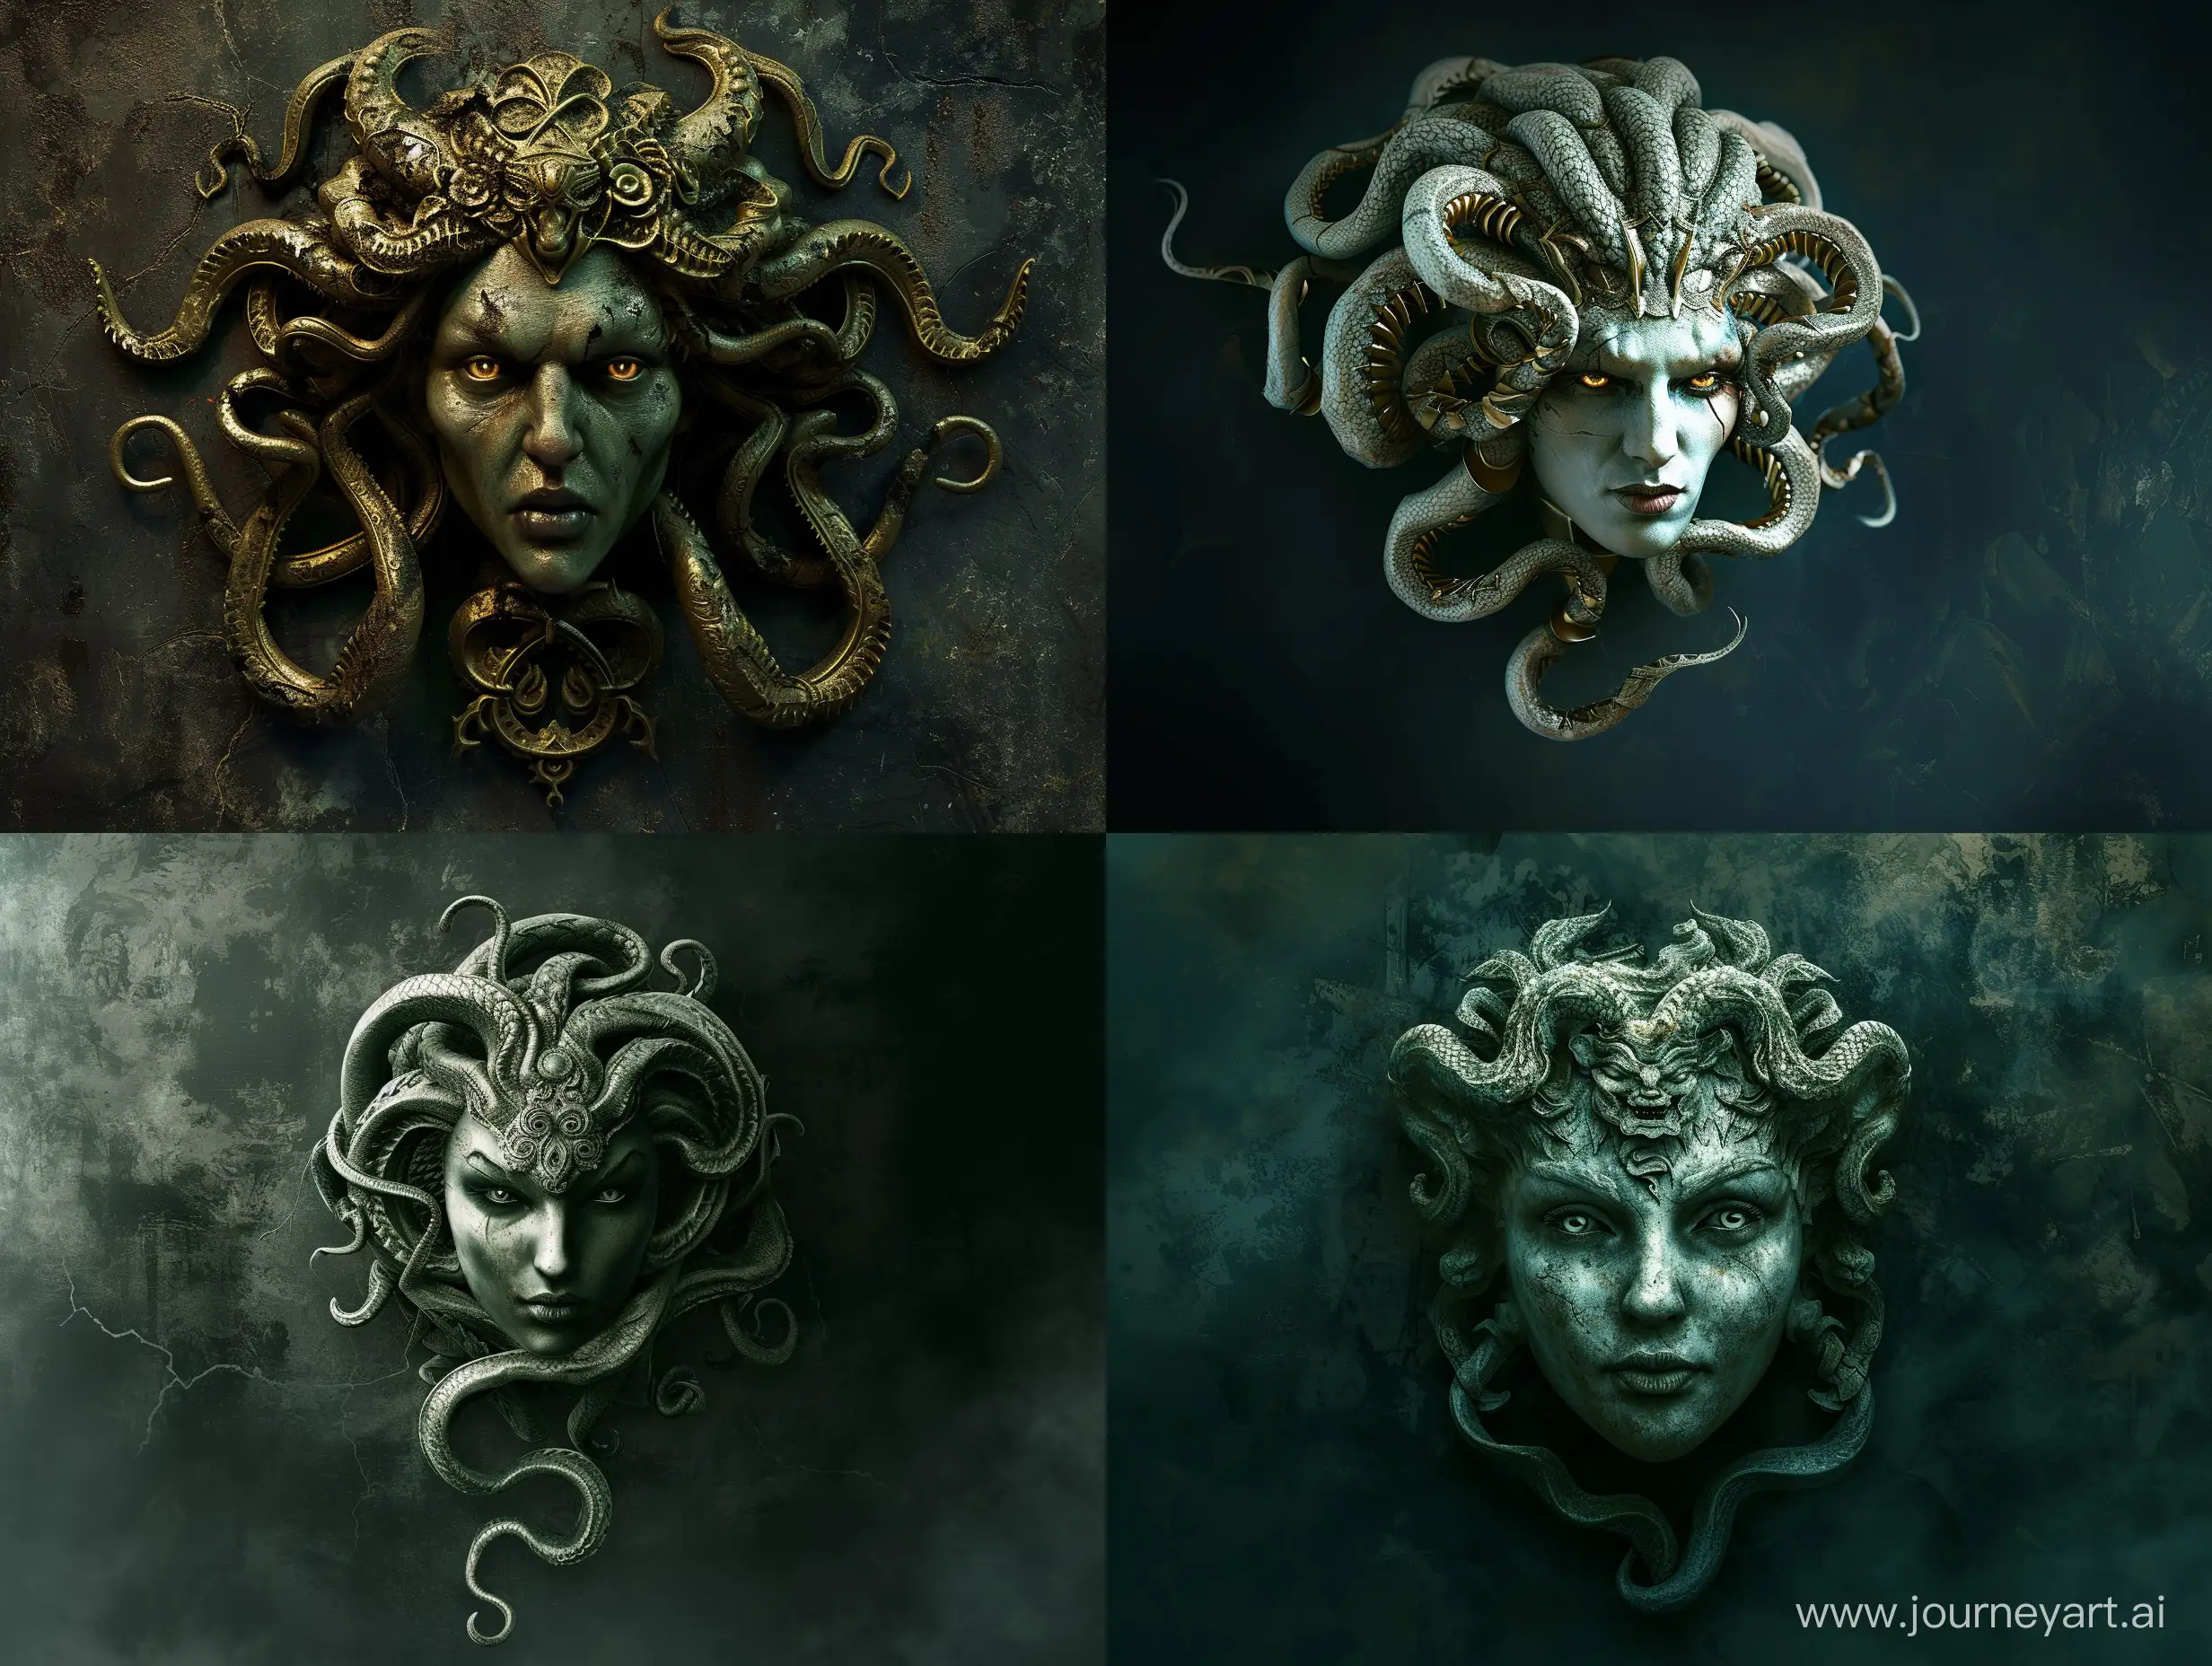 Sinister-Medusa-Gorgon-in-the-Shadows